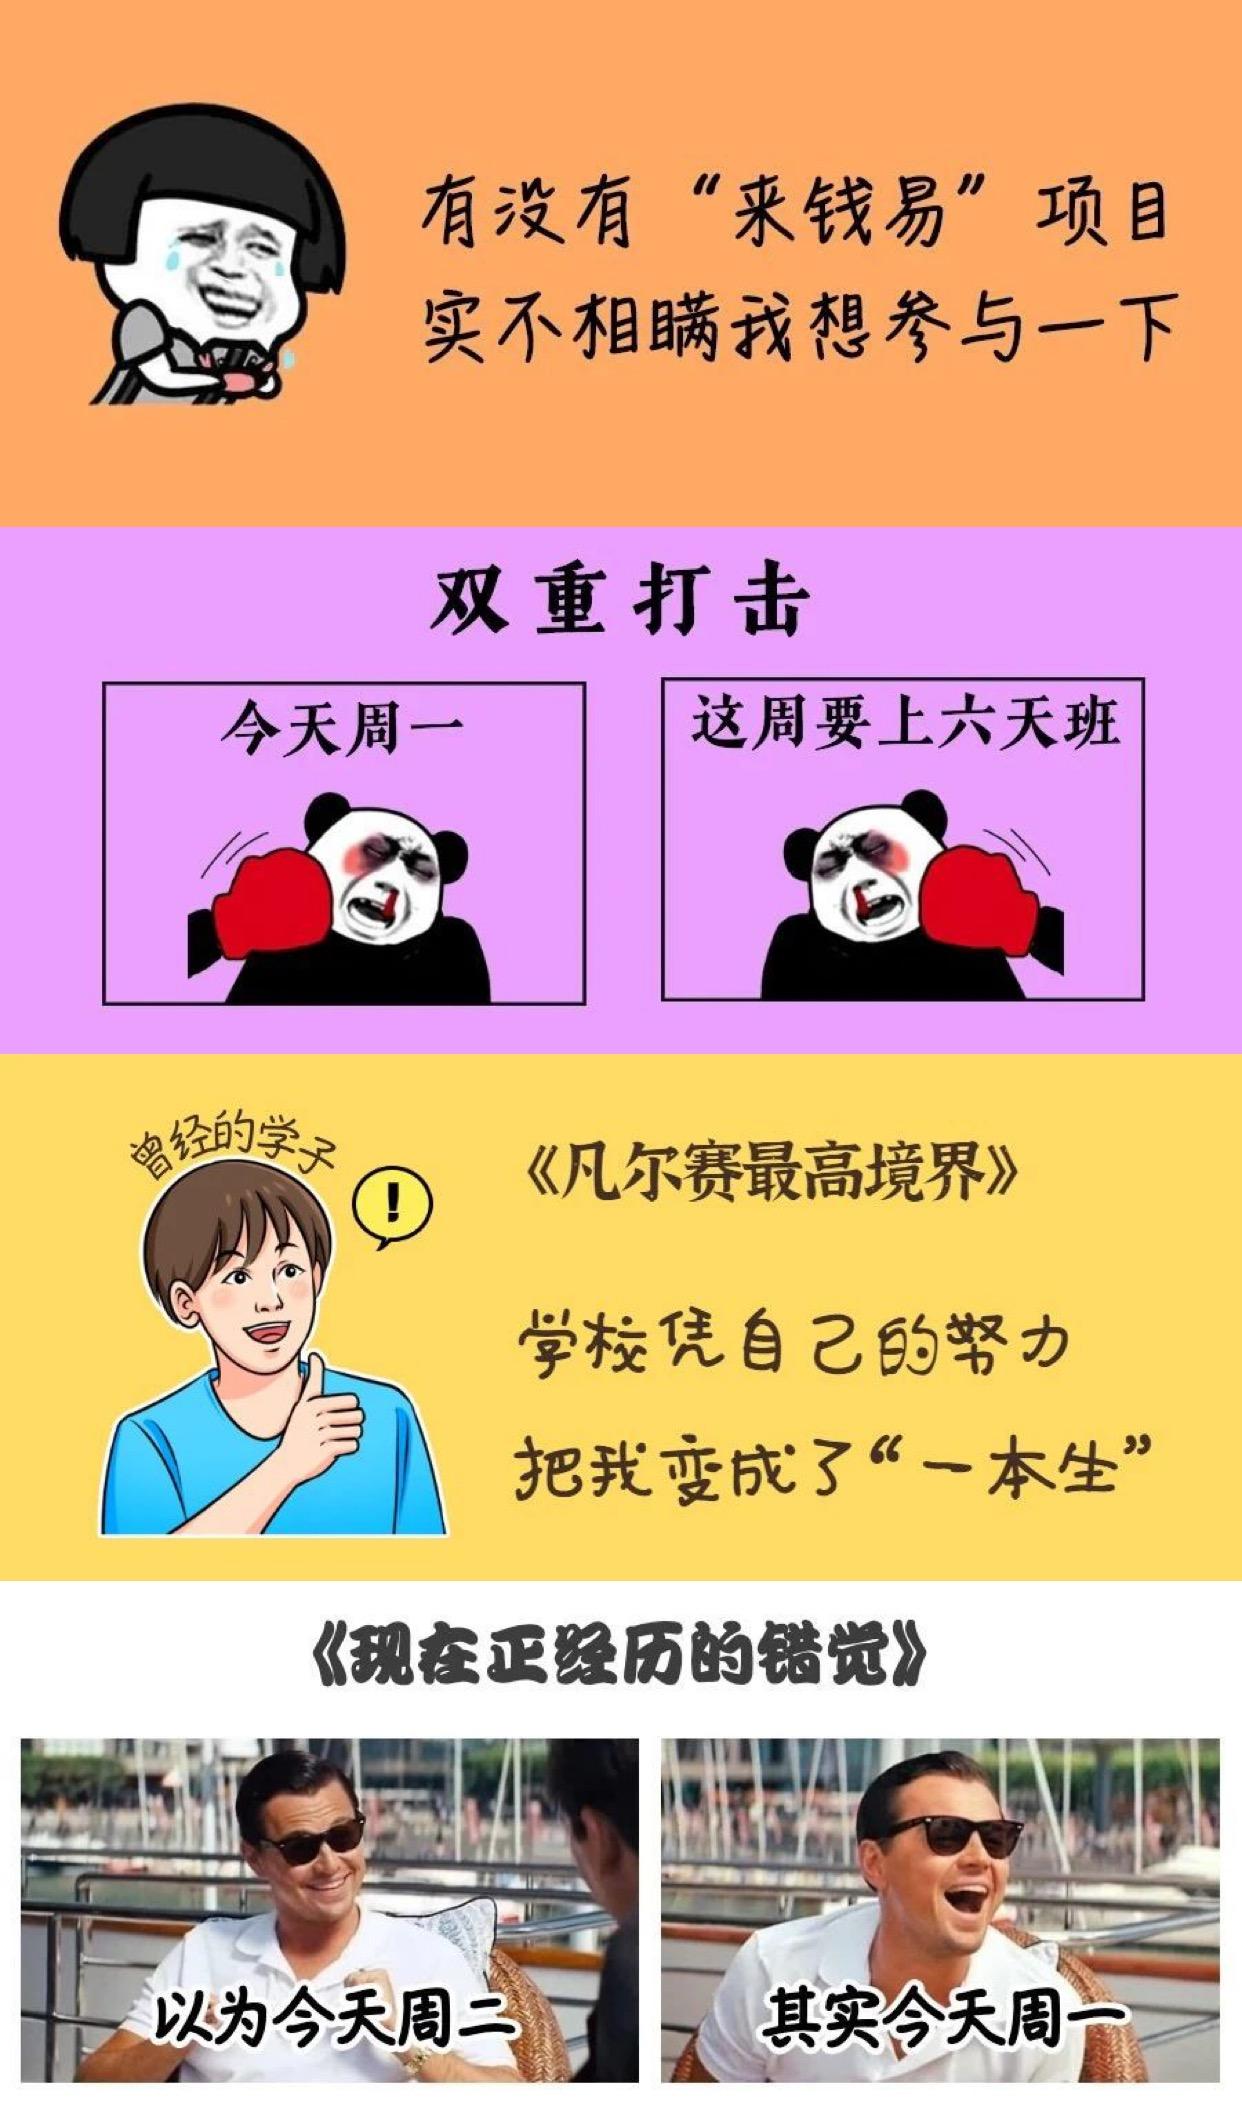 深圳卫健委公众号被投诉低俗博流量-荔枝网